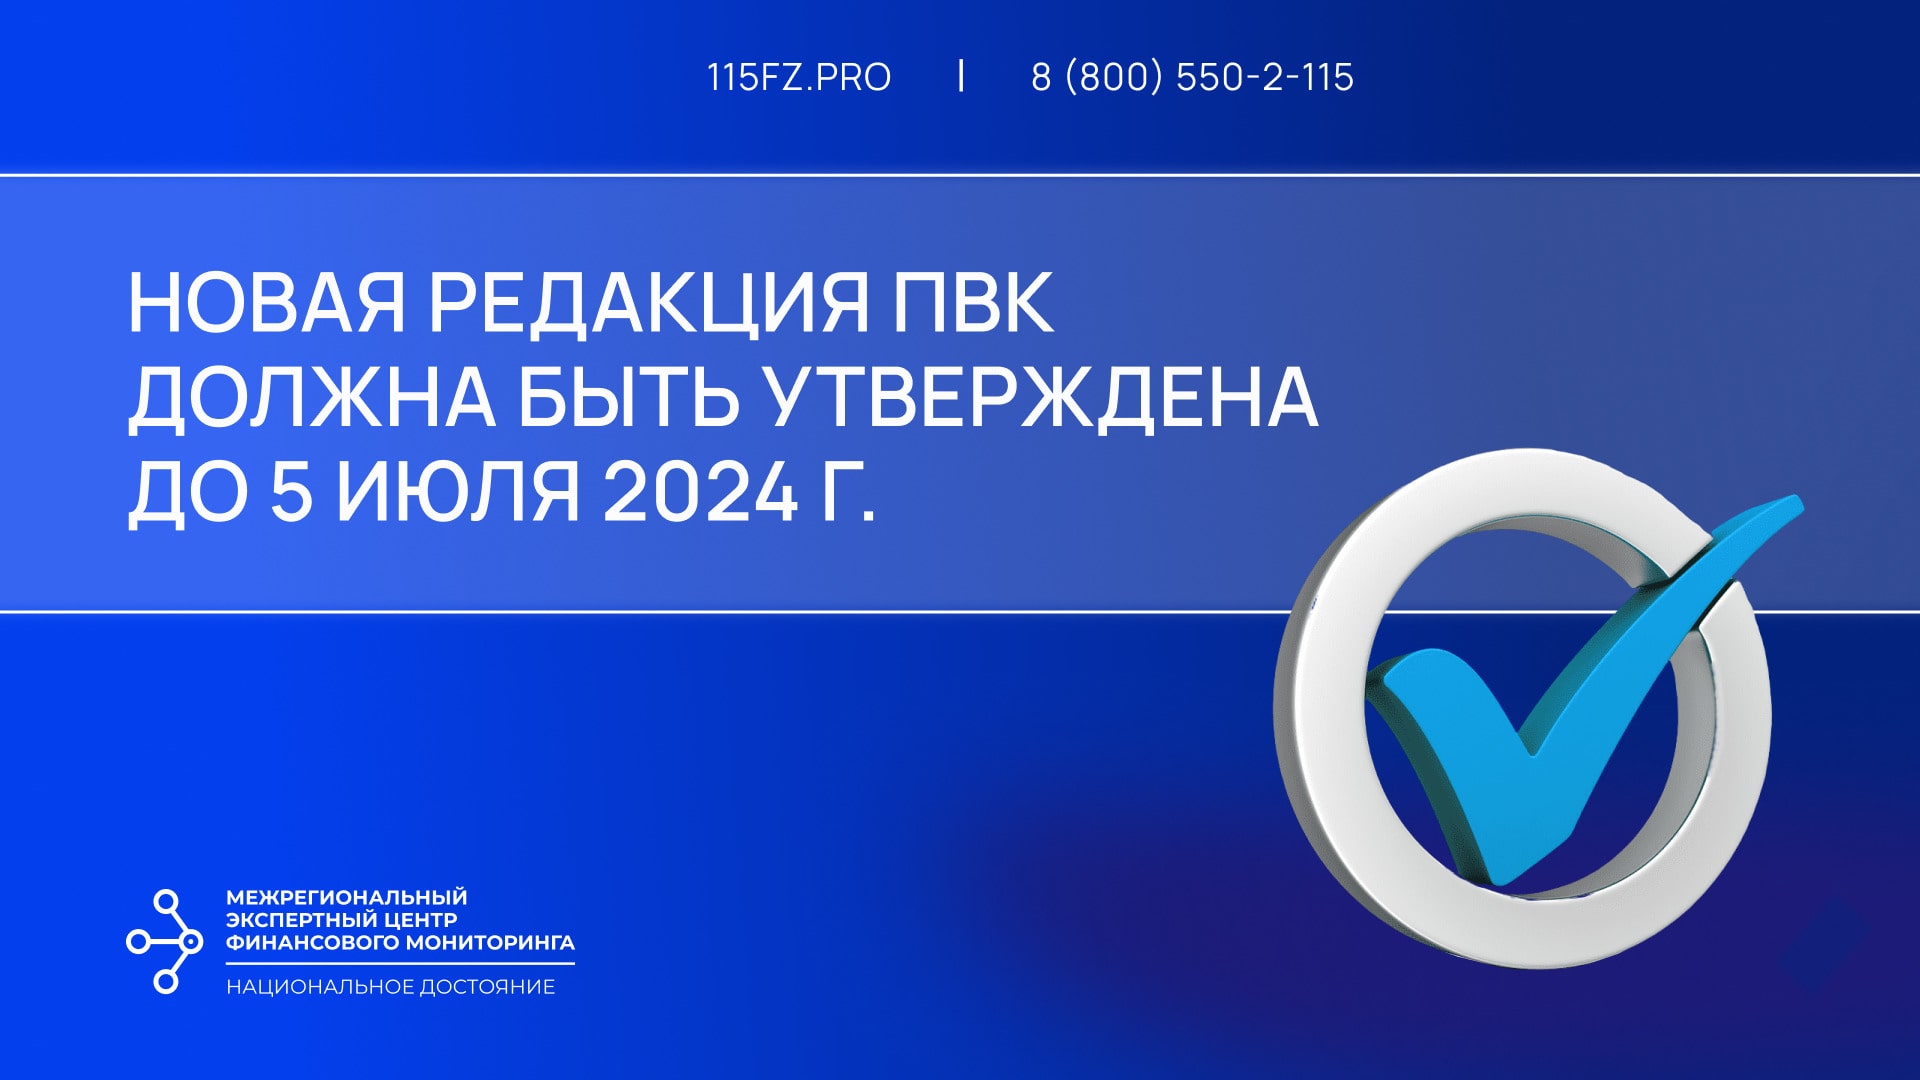 В срок до 05 июля 2024 г. необходимо утвердить новую редакцию ПВК по ПОД/ФТ/ФРОМУ всем, кроме НФО